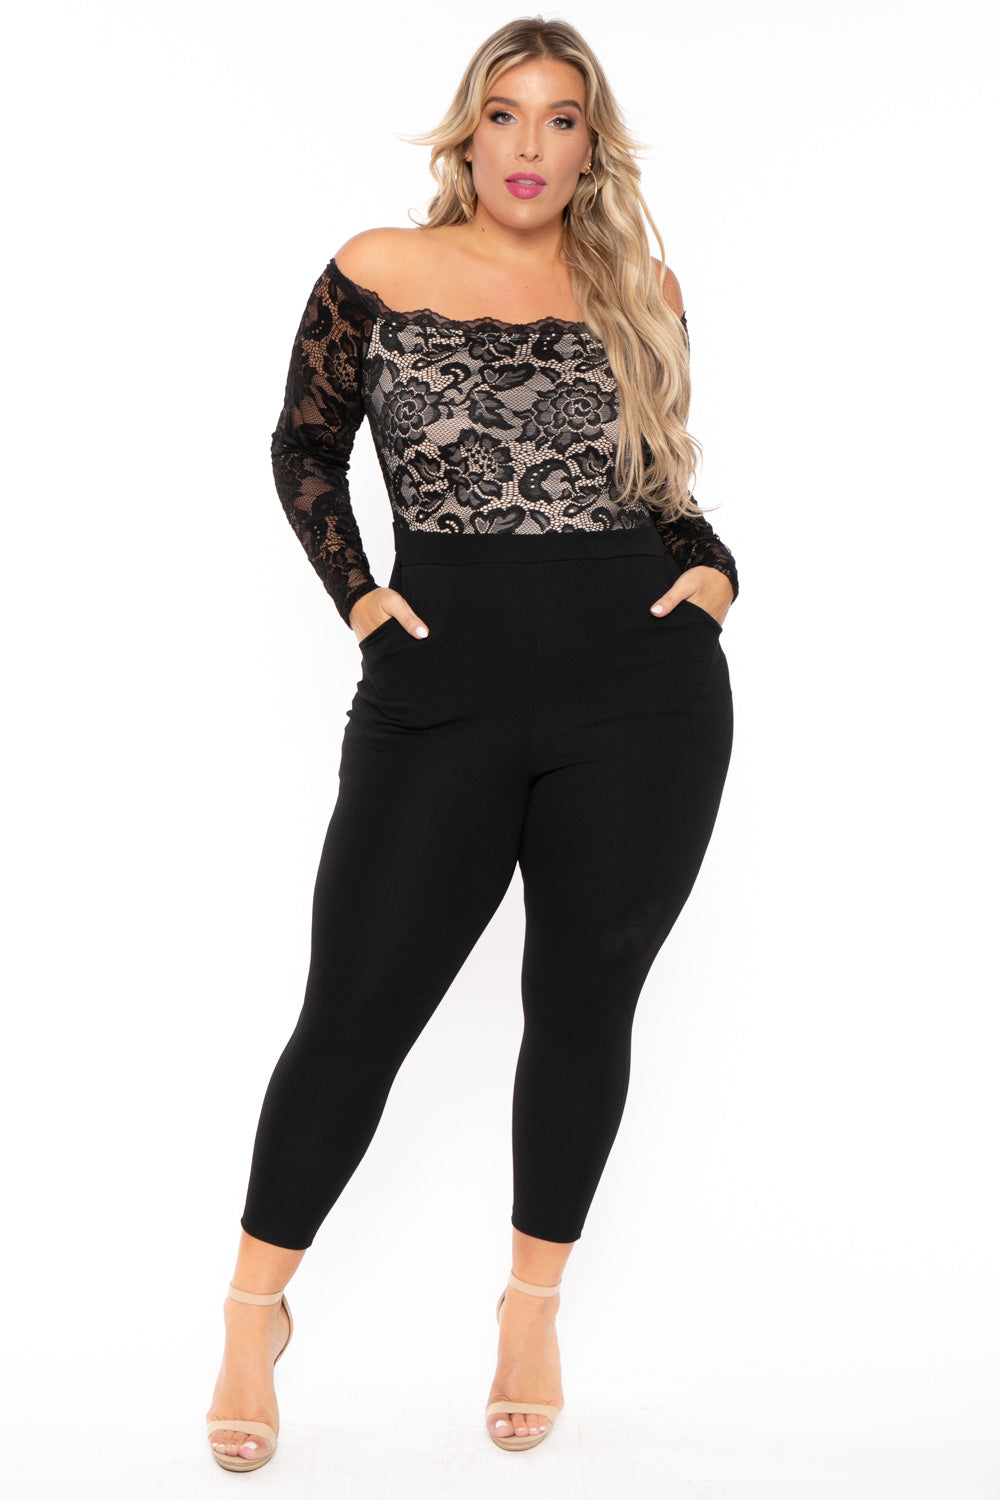 Women's Plus Size Jumpsuits & Rompers - Curvy Sense - black